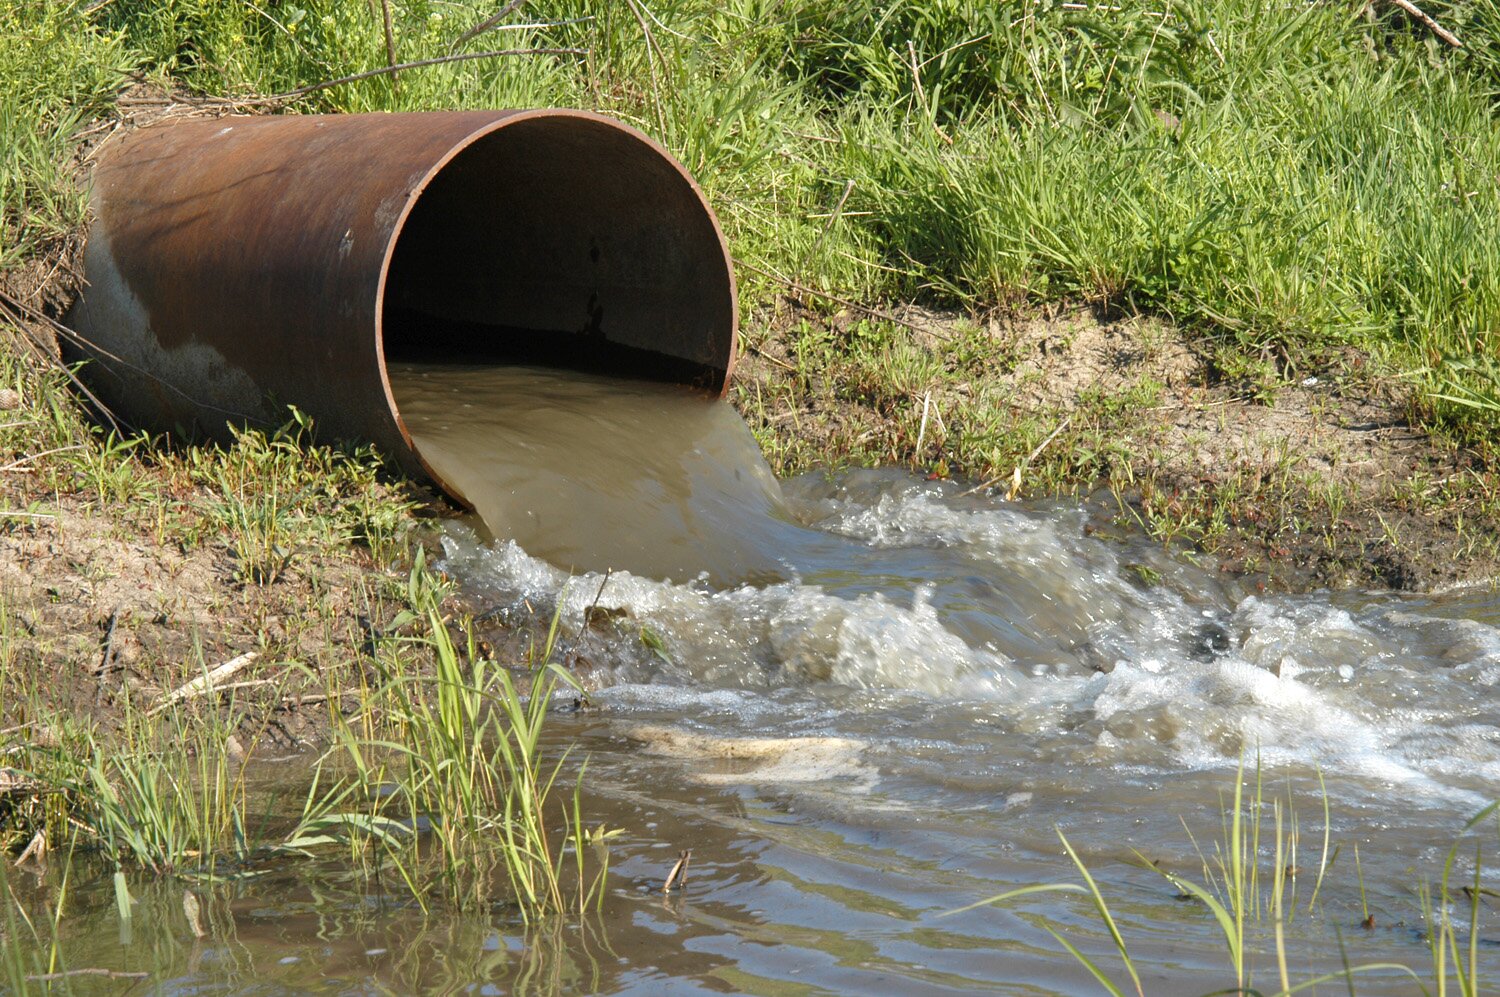 Na zdjęciu jest szeroka rura, z której brudna woda wypływa do zbiornika wodnego. Rura jest wkopana poziomo w teren porośnięty trawą. 